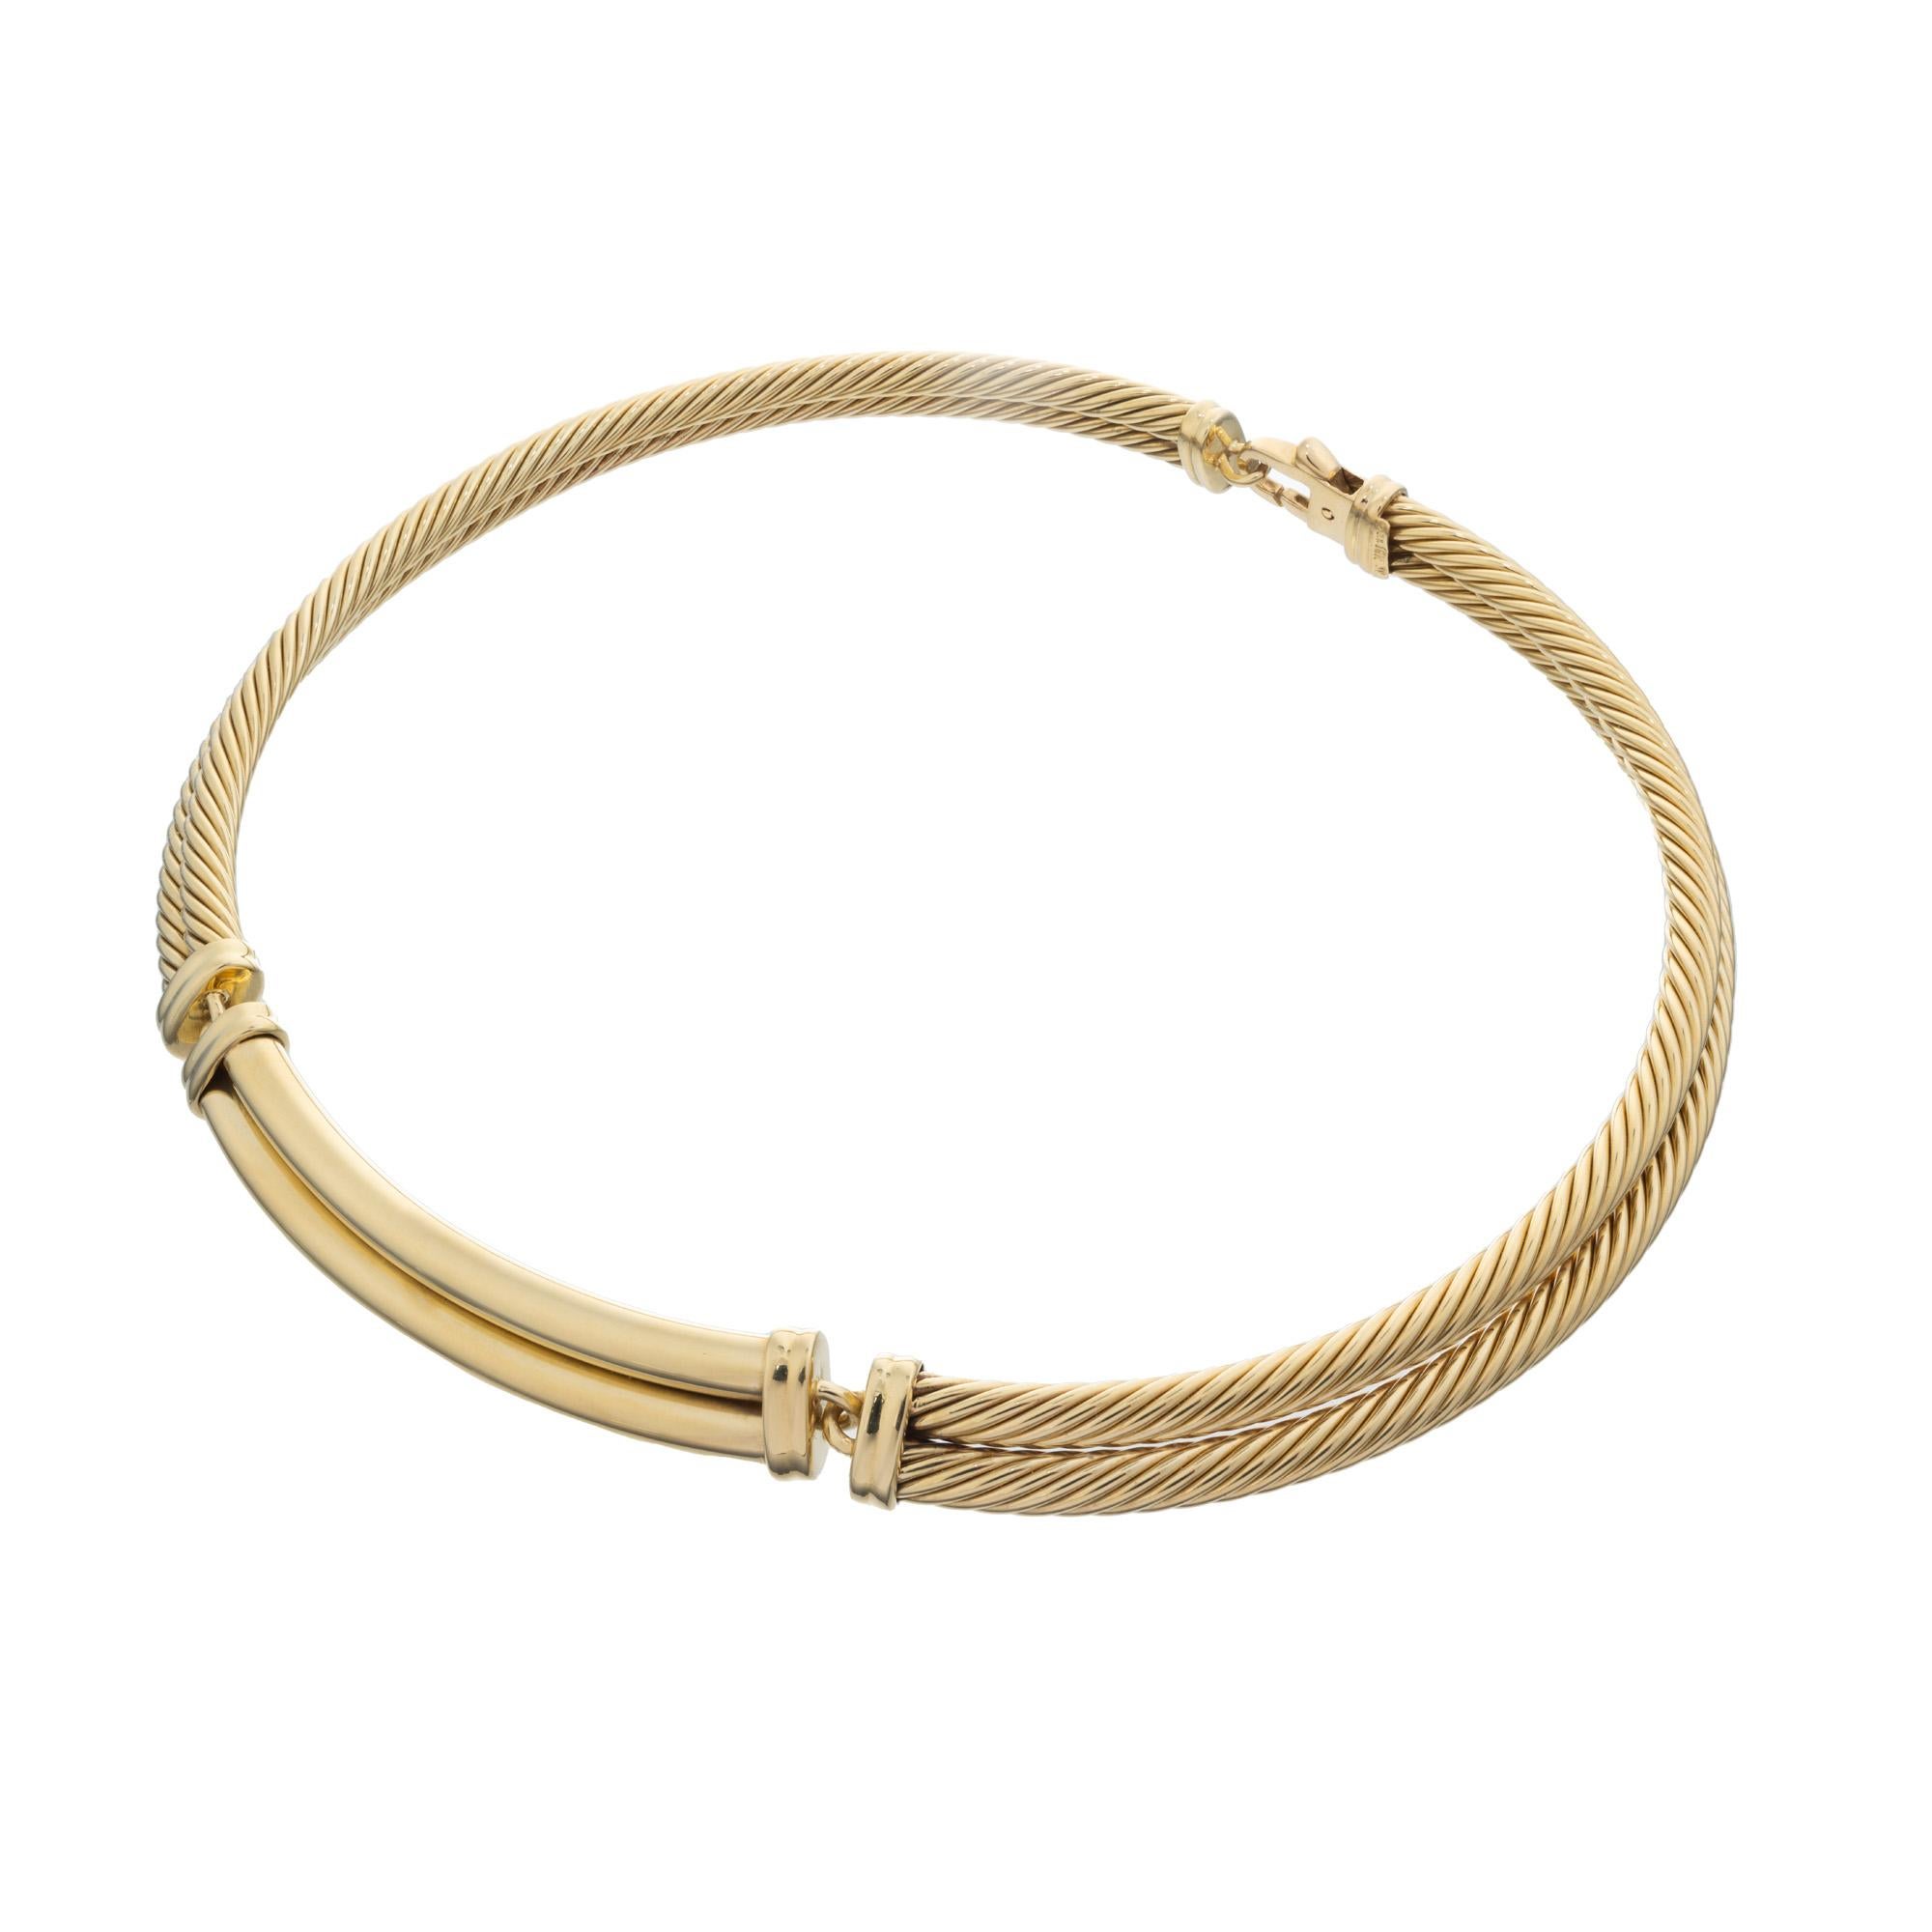 Diese zweireihige David Yurman Gelbgold Halskette mit gedrehtem Kabel ist ein atemberaubendes Stück, das mühelos Eleganz mit Modernität verbindet. Diese Halskette aus 18 Karat Gelbgold zeichnet sich durch ein einzigartiges, gedrehtes Kabelmuster